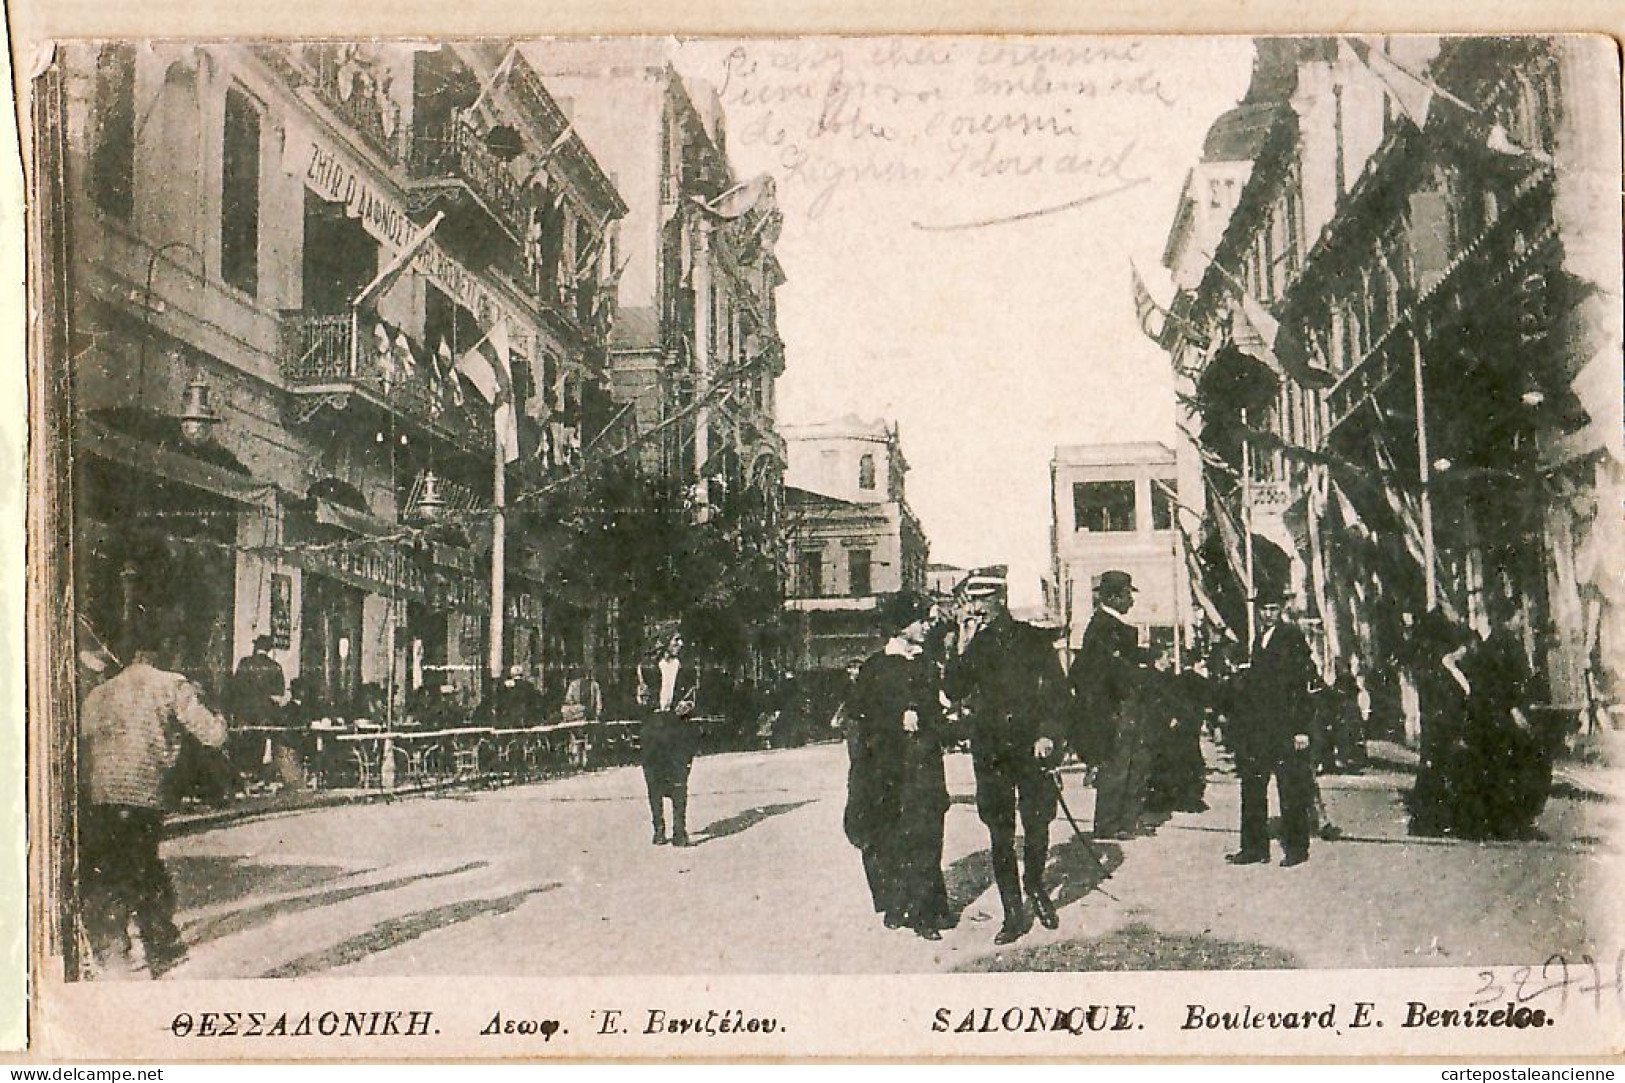 06411 / Lisez Longue Correspondance SALONIQUE Boulevard BENIZELOS 28-02-1912 D'Edouard LIGNON MISSION ORIENT Grèce - Grèce